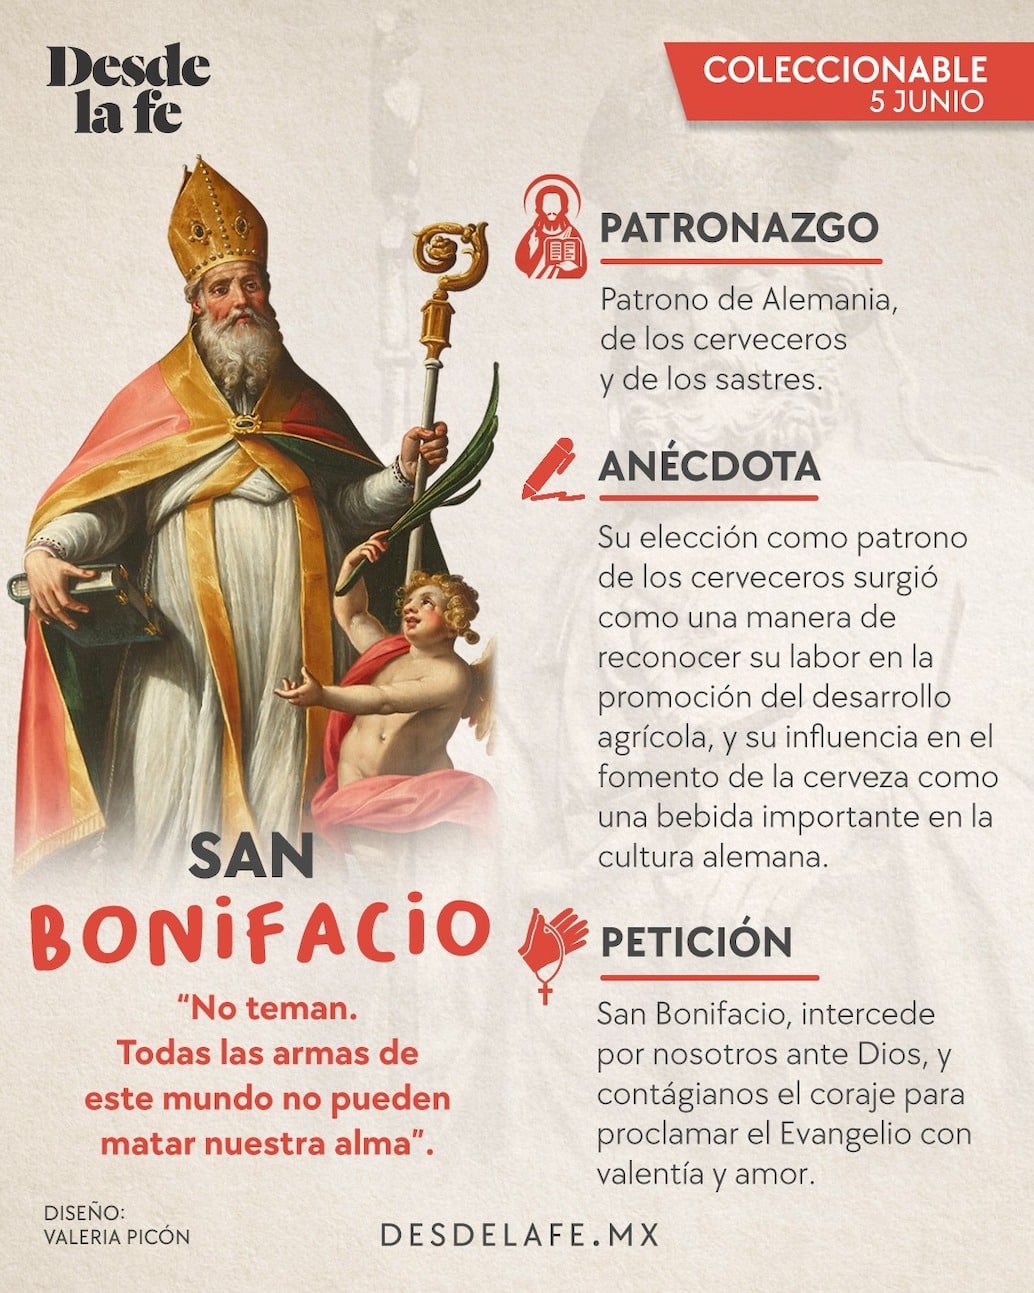 San Bonifacios es considerado patrón de los cerveceros y sastres. Ilustración: Desde la fe